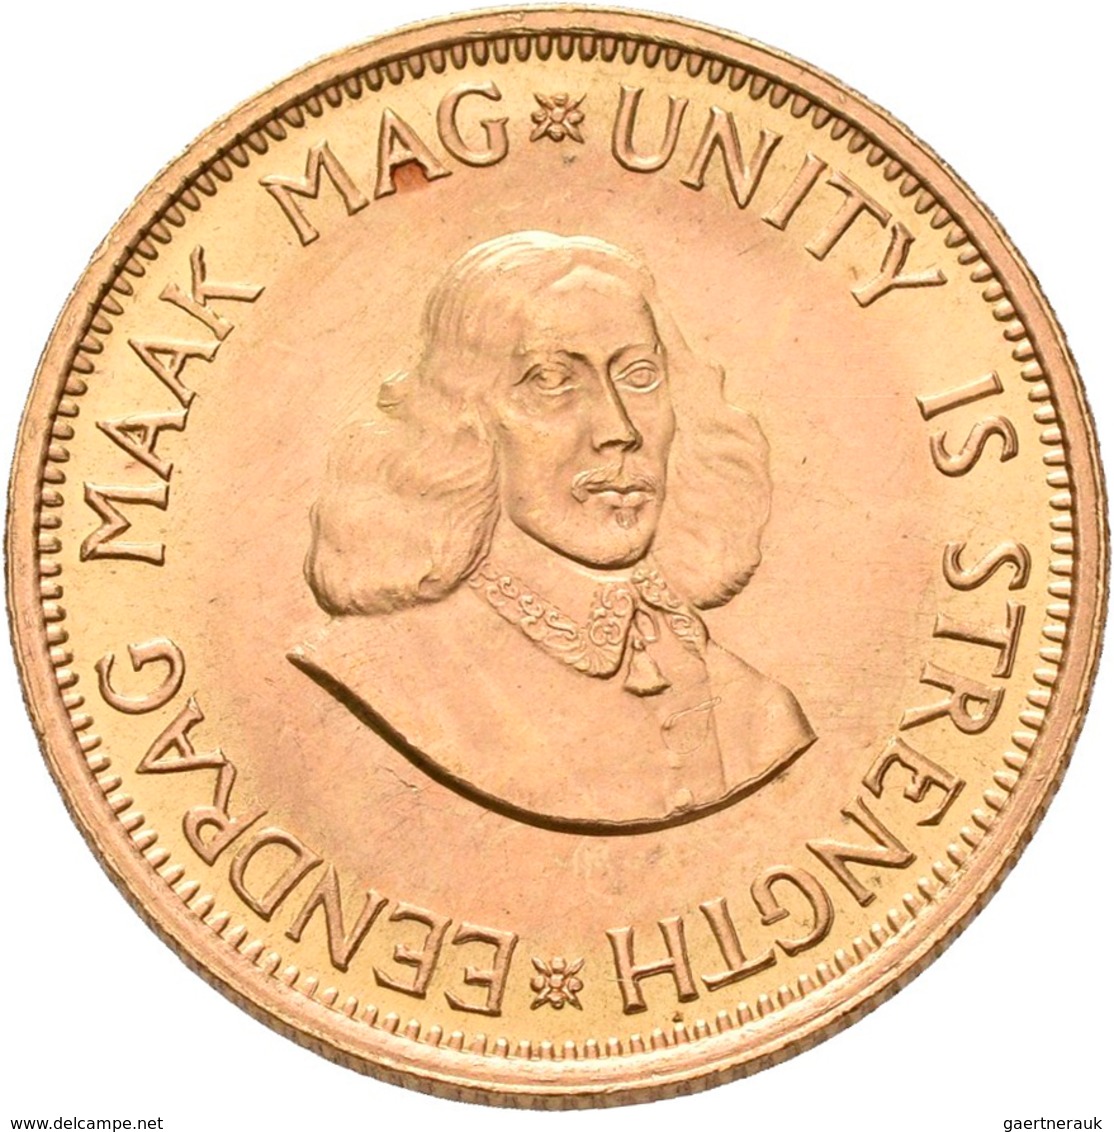 Südafrika - Anlagegold: 2 Rand 1965, KM# 64, Friedberg 11. 7,99 G, 917/1000 Gold, Vorzüglich. - Sud Africa